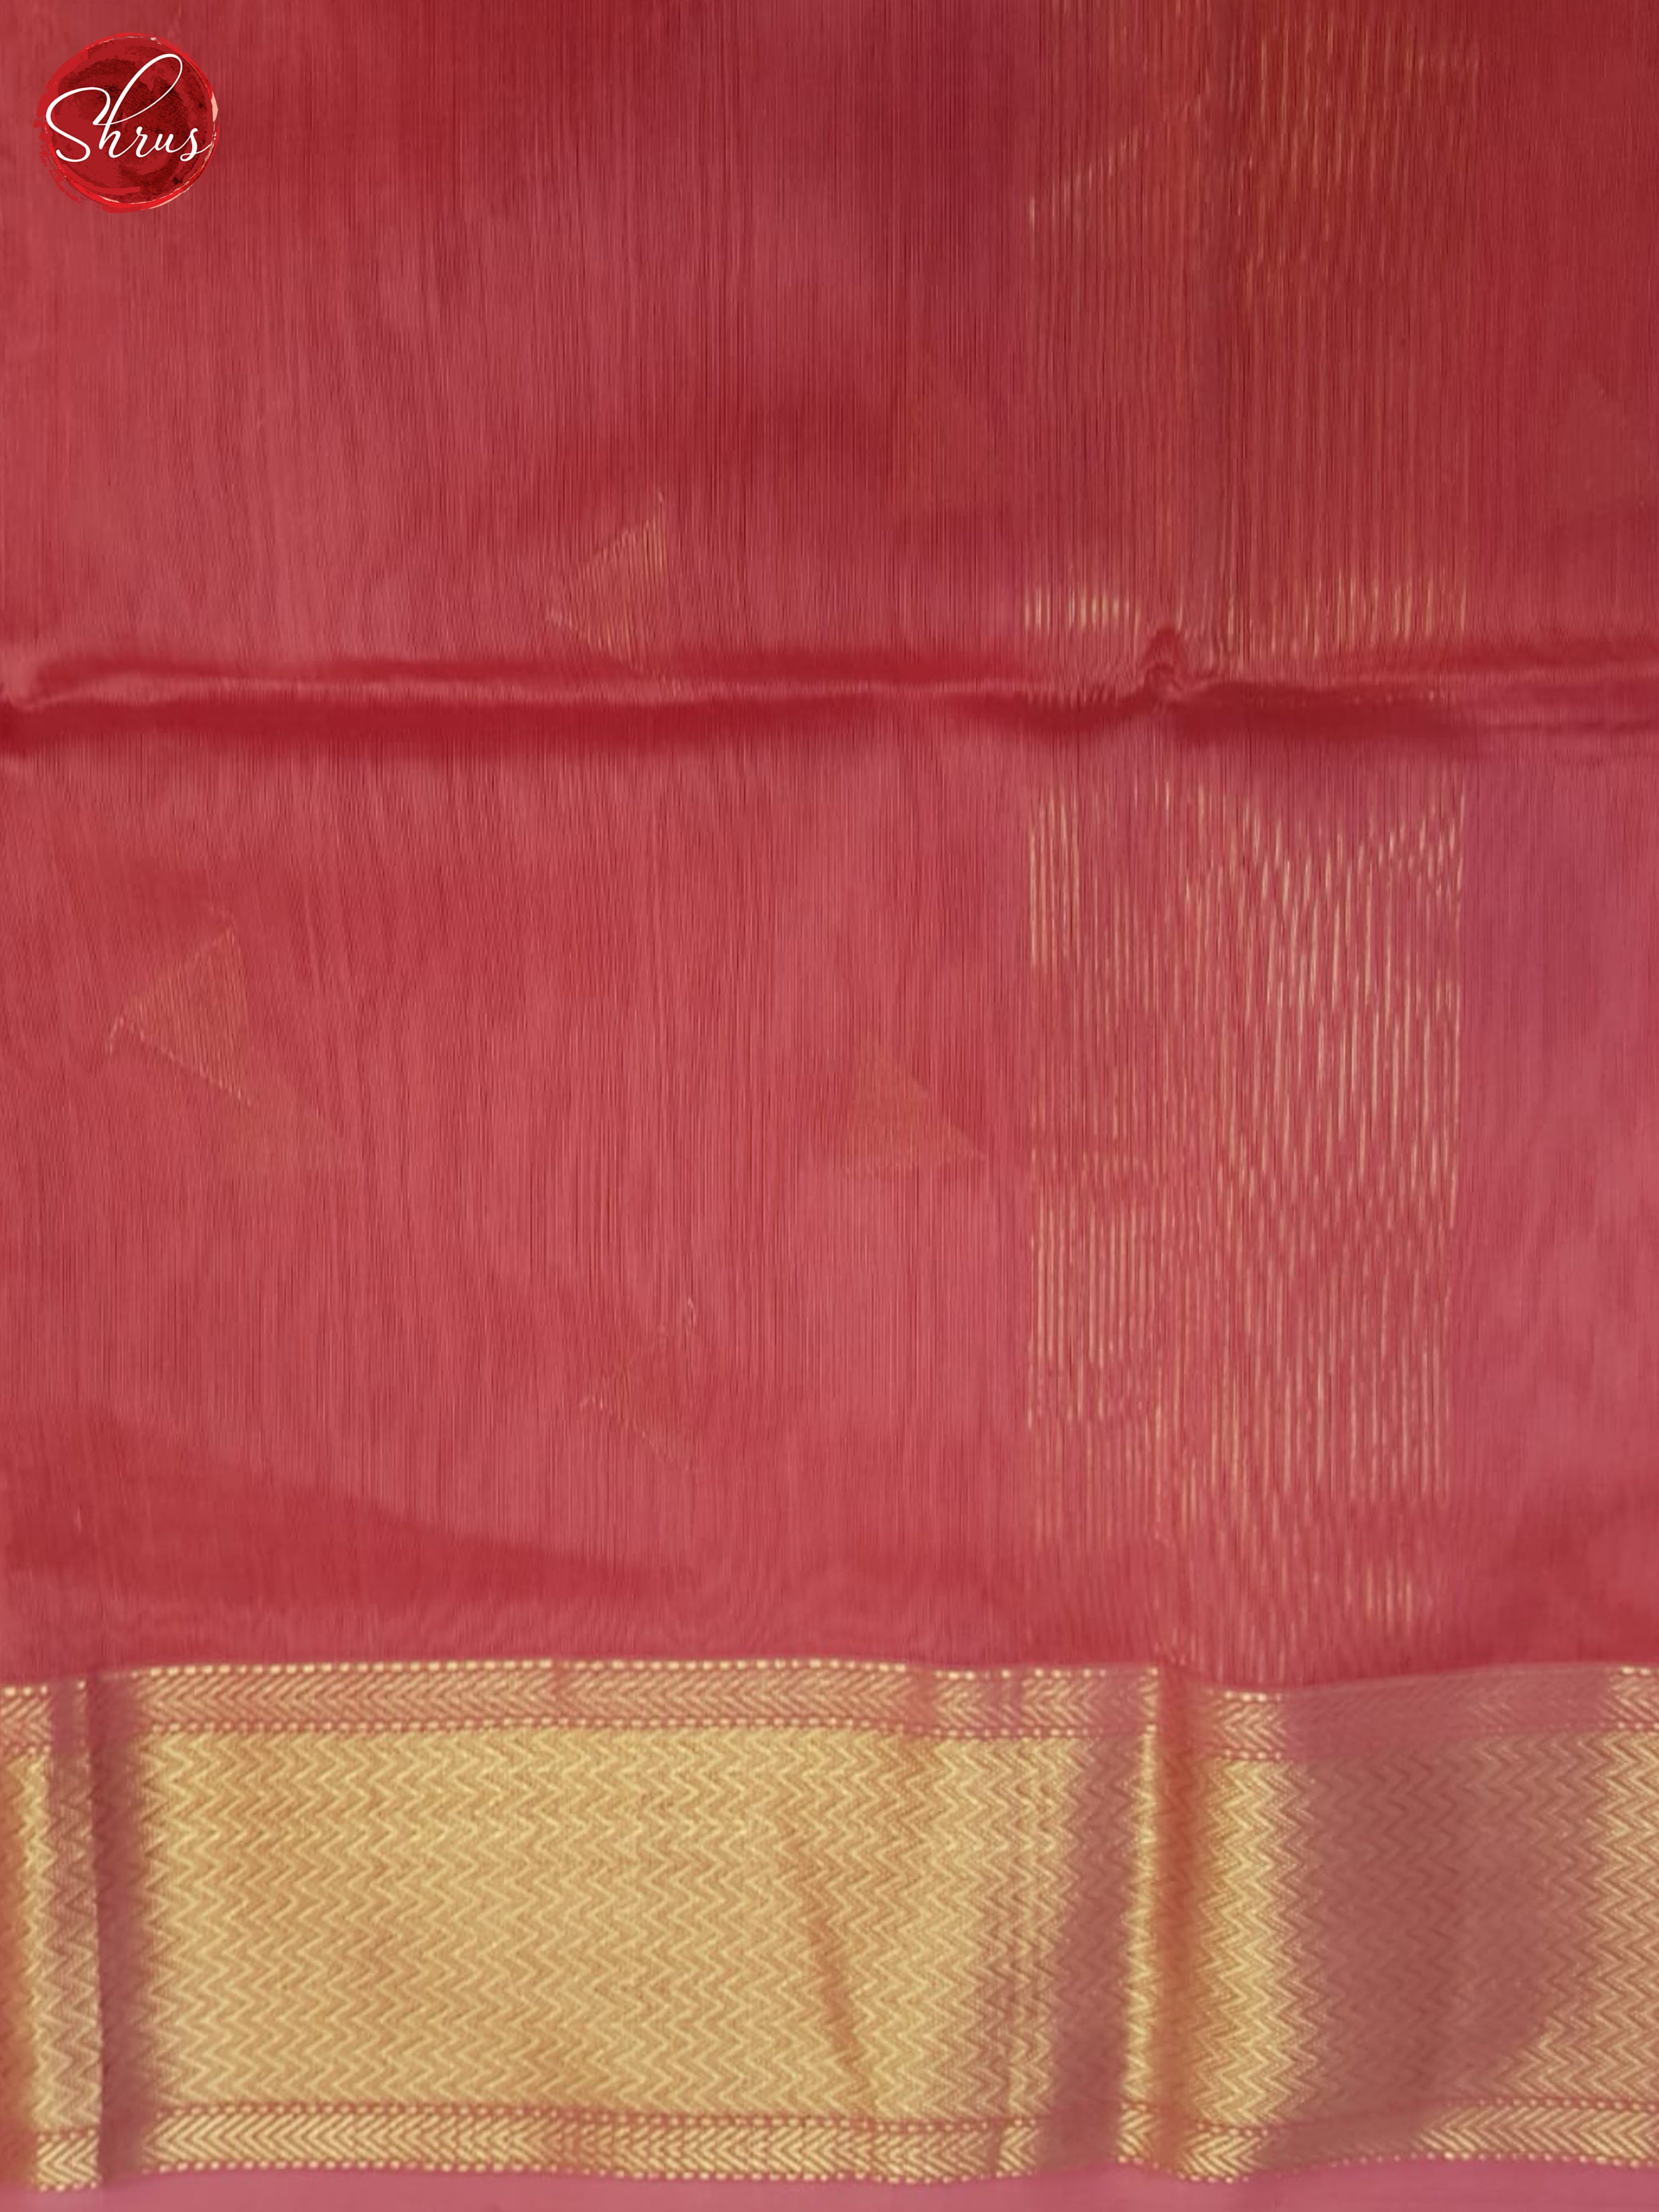 Pink(Single Tone)- Maheshwari silkcotton Saree - Shop on ShrusEternity.com